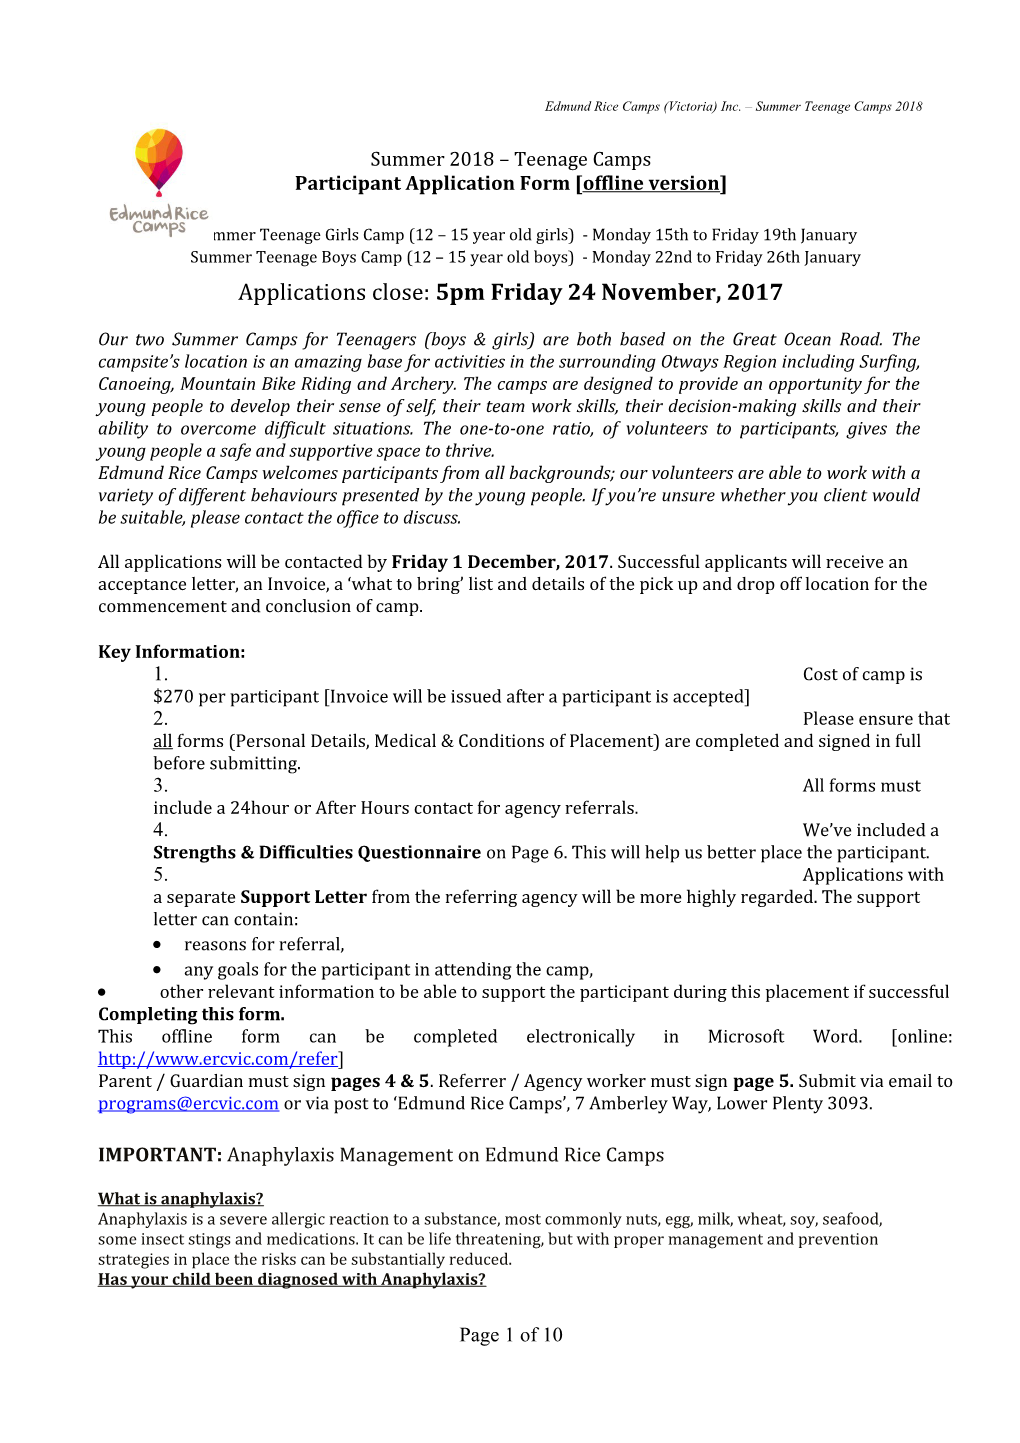 Edmund Rice Camps - Participant Application Form